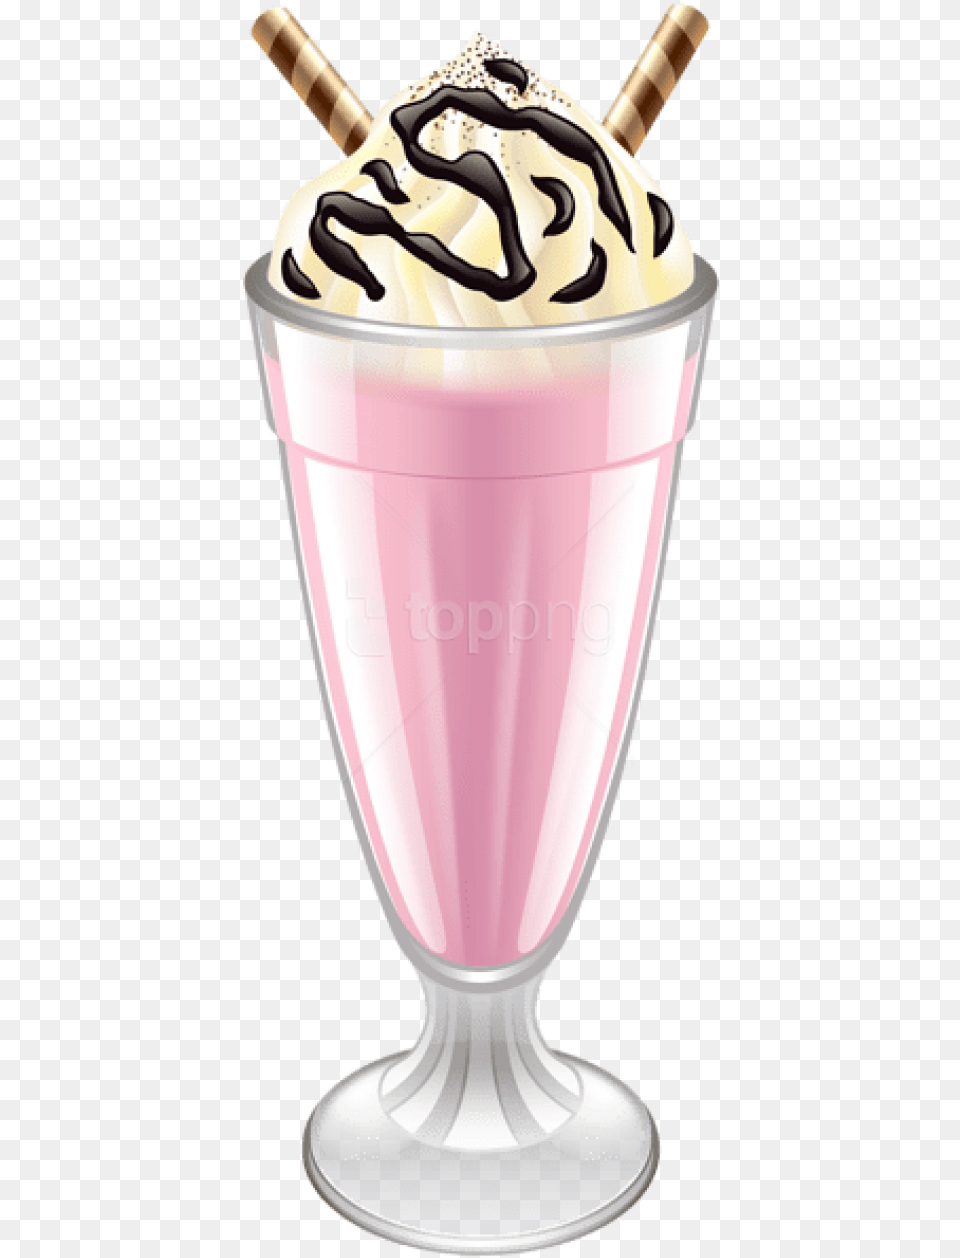 Milk Shake Milkshake, Beverage, Juice, Smoothie, Food Png Image